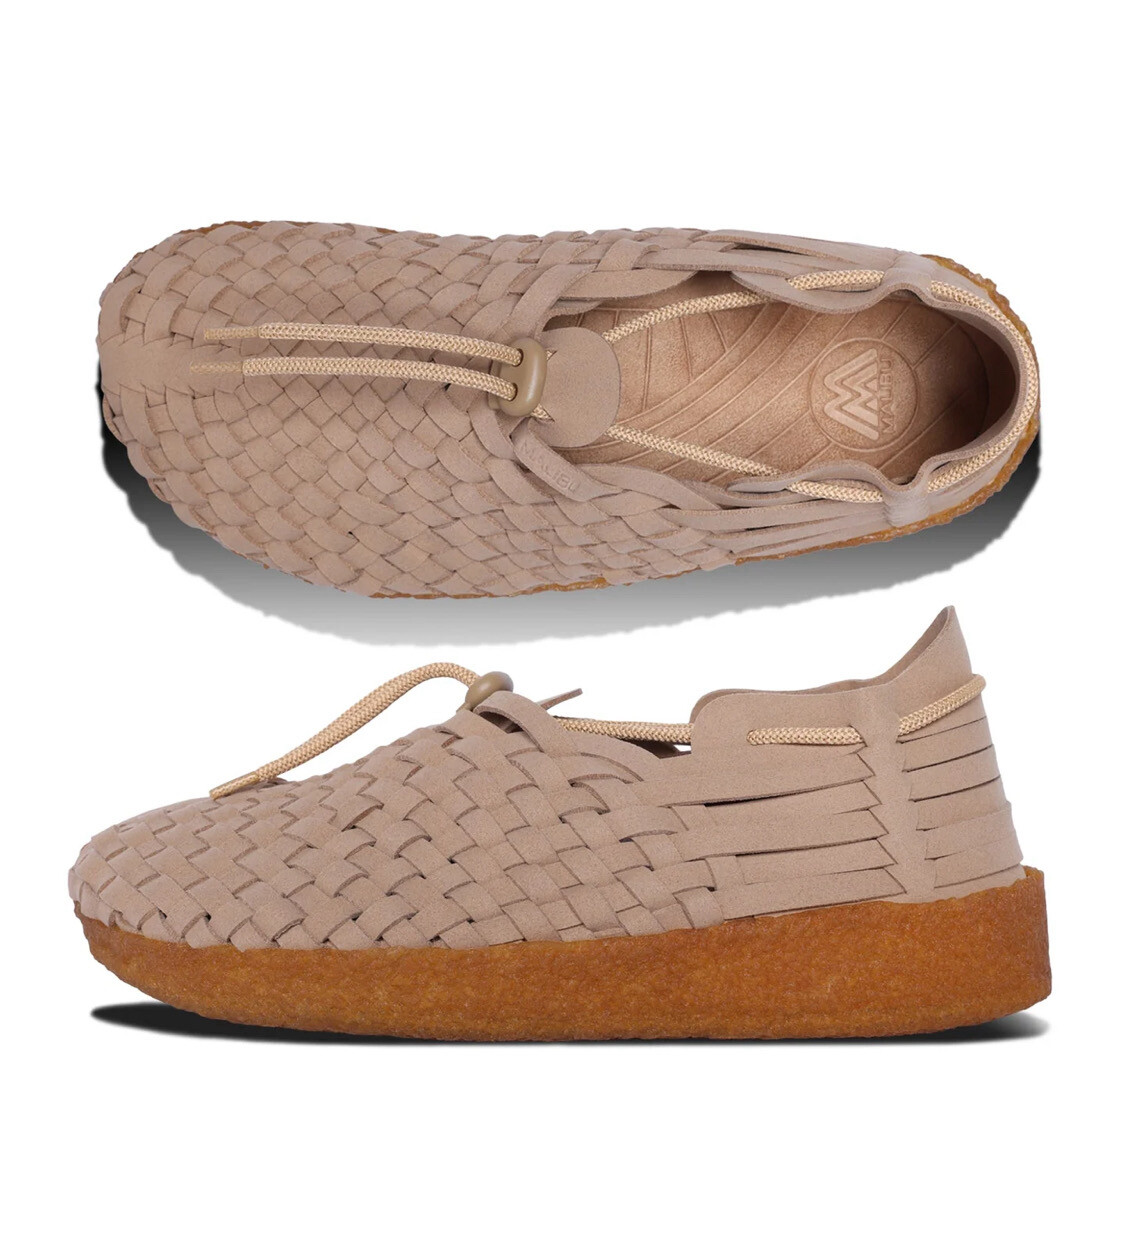 Malibu Sandals LATIGO Beige MS17-0021, Size: 39-40